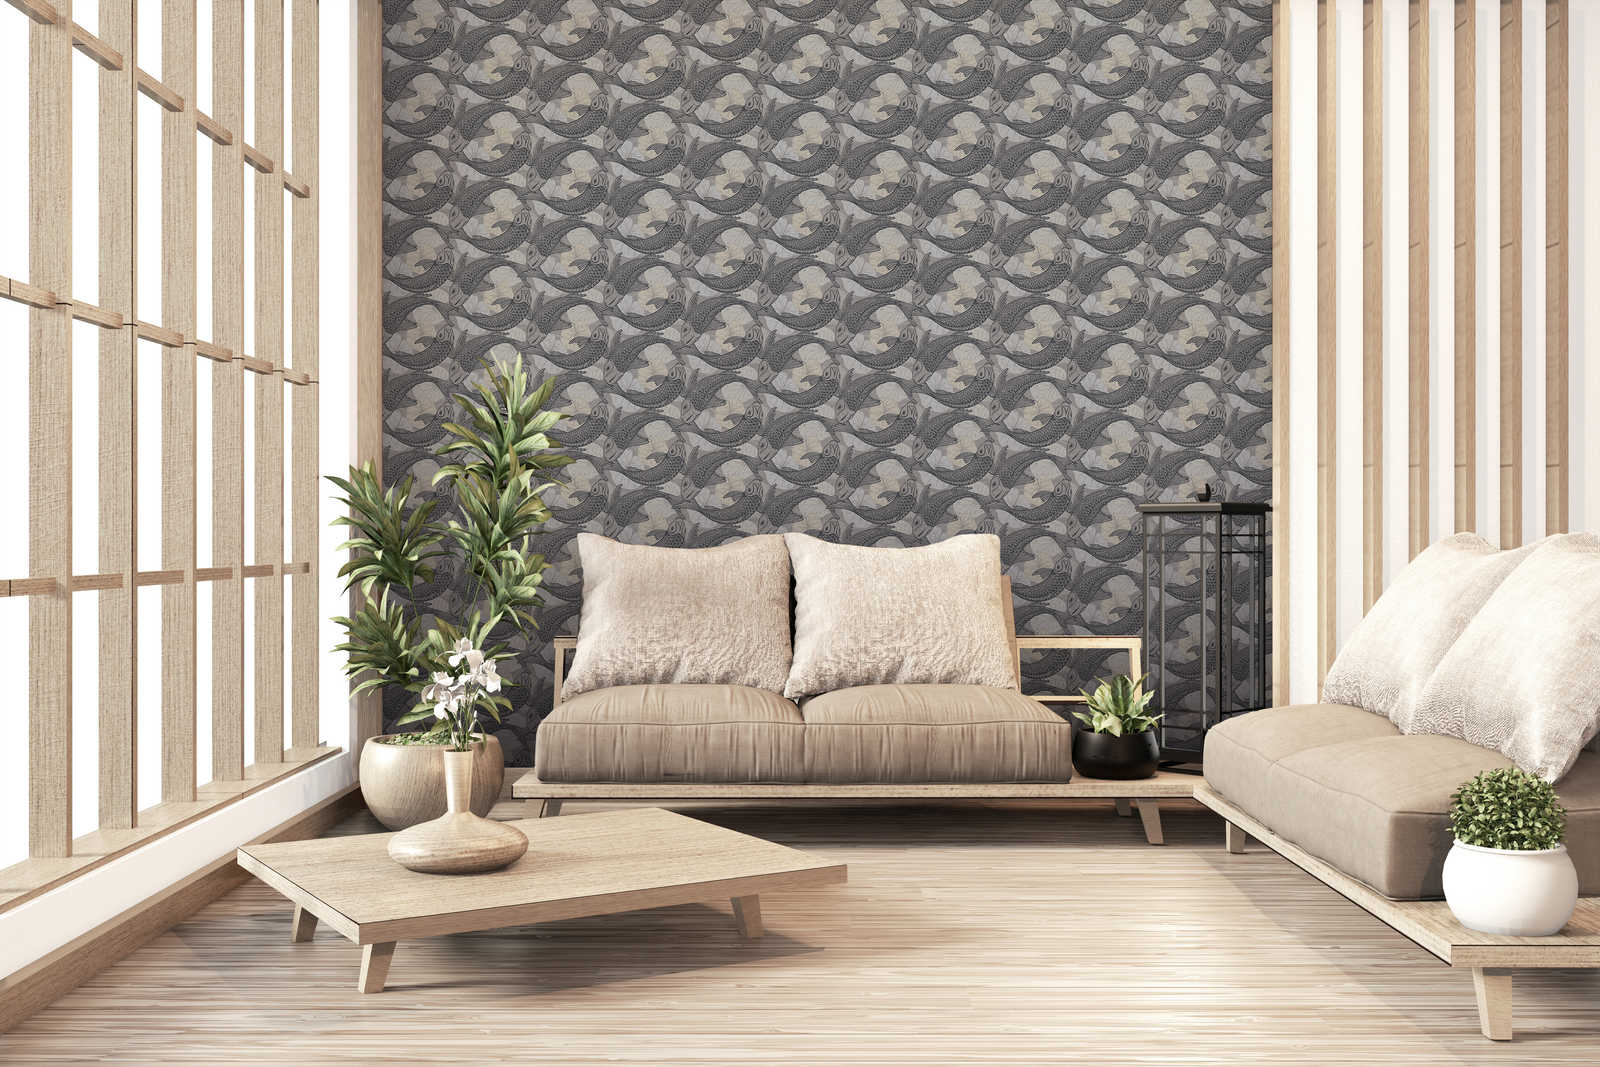             behang Aziatisch design met Koi motief & metallic effect - beige, grijs, zwart
        